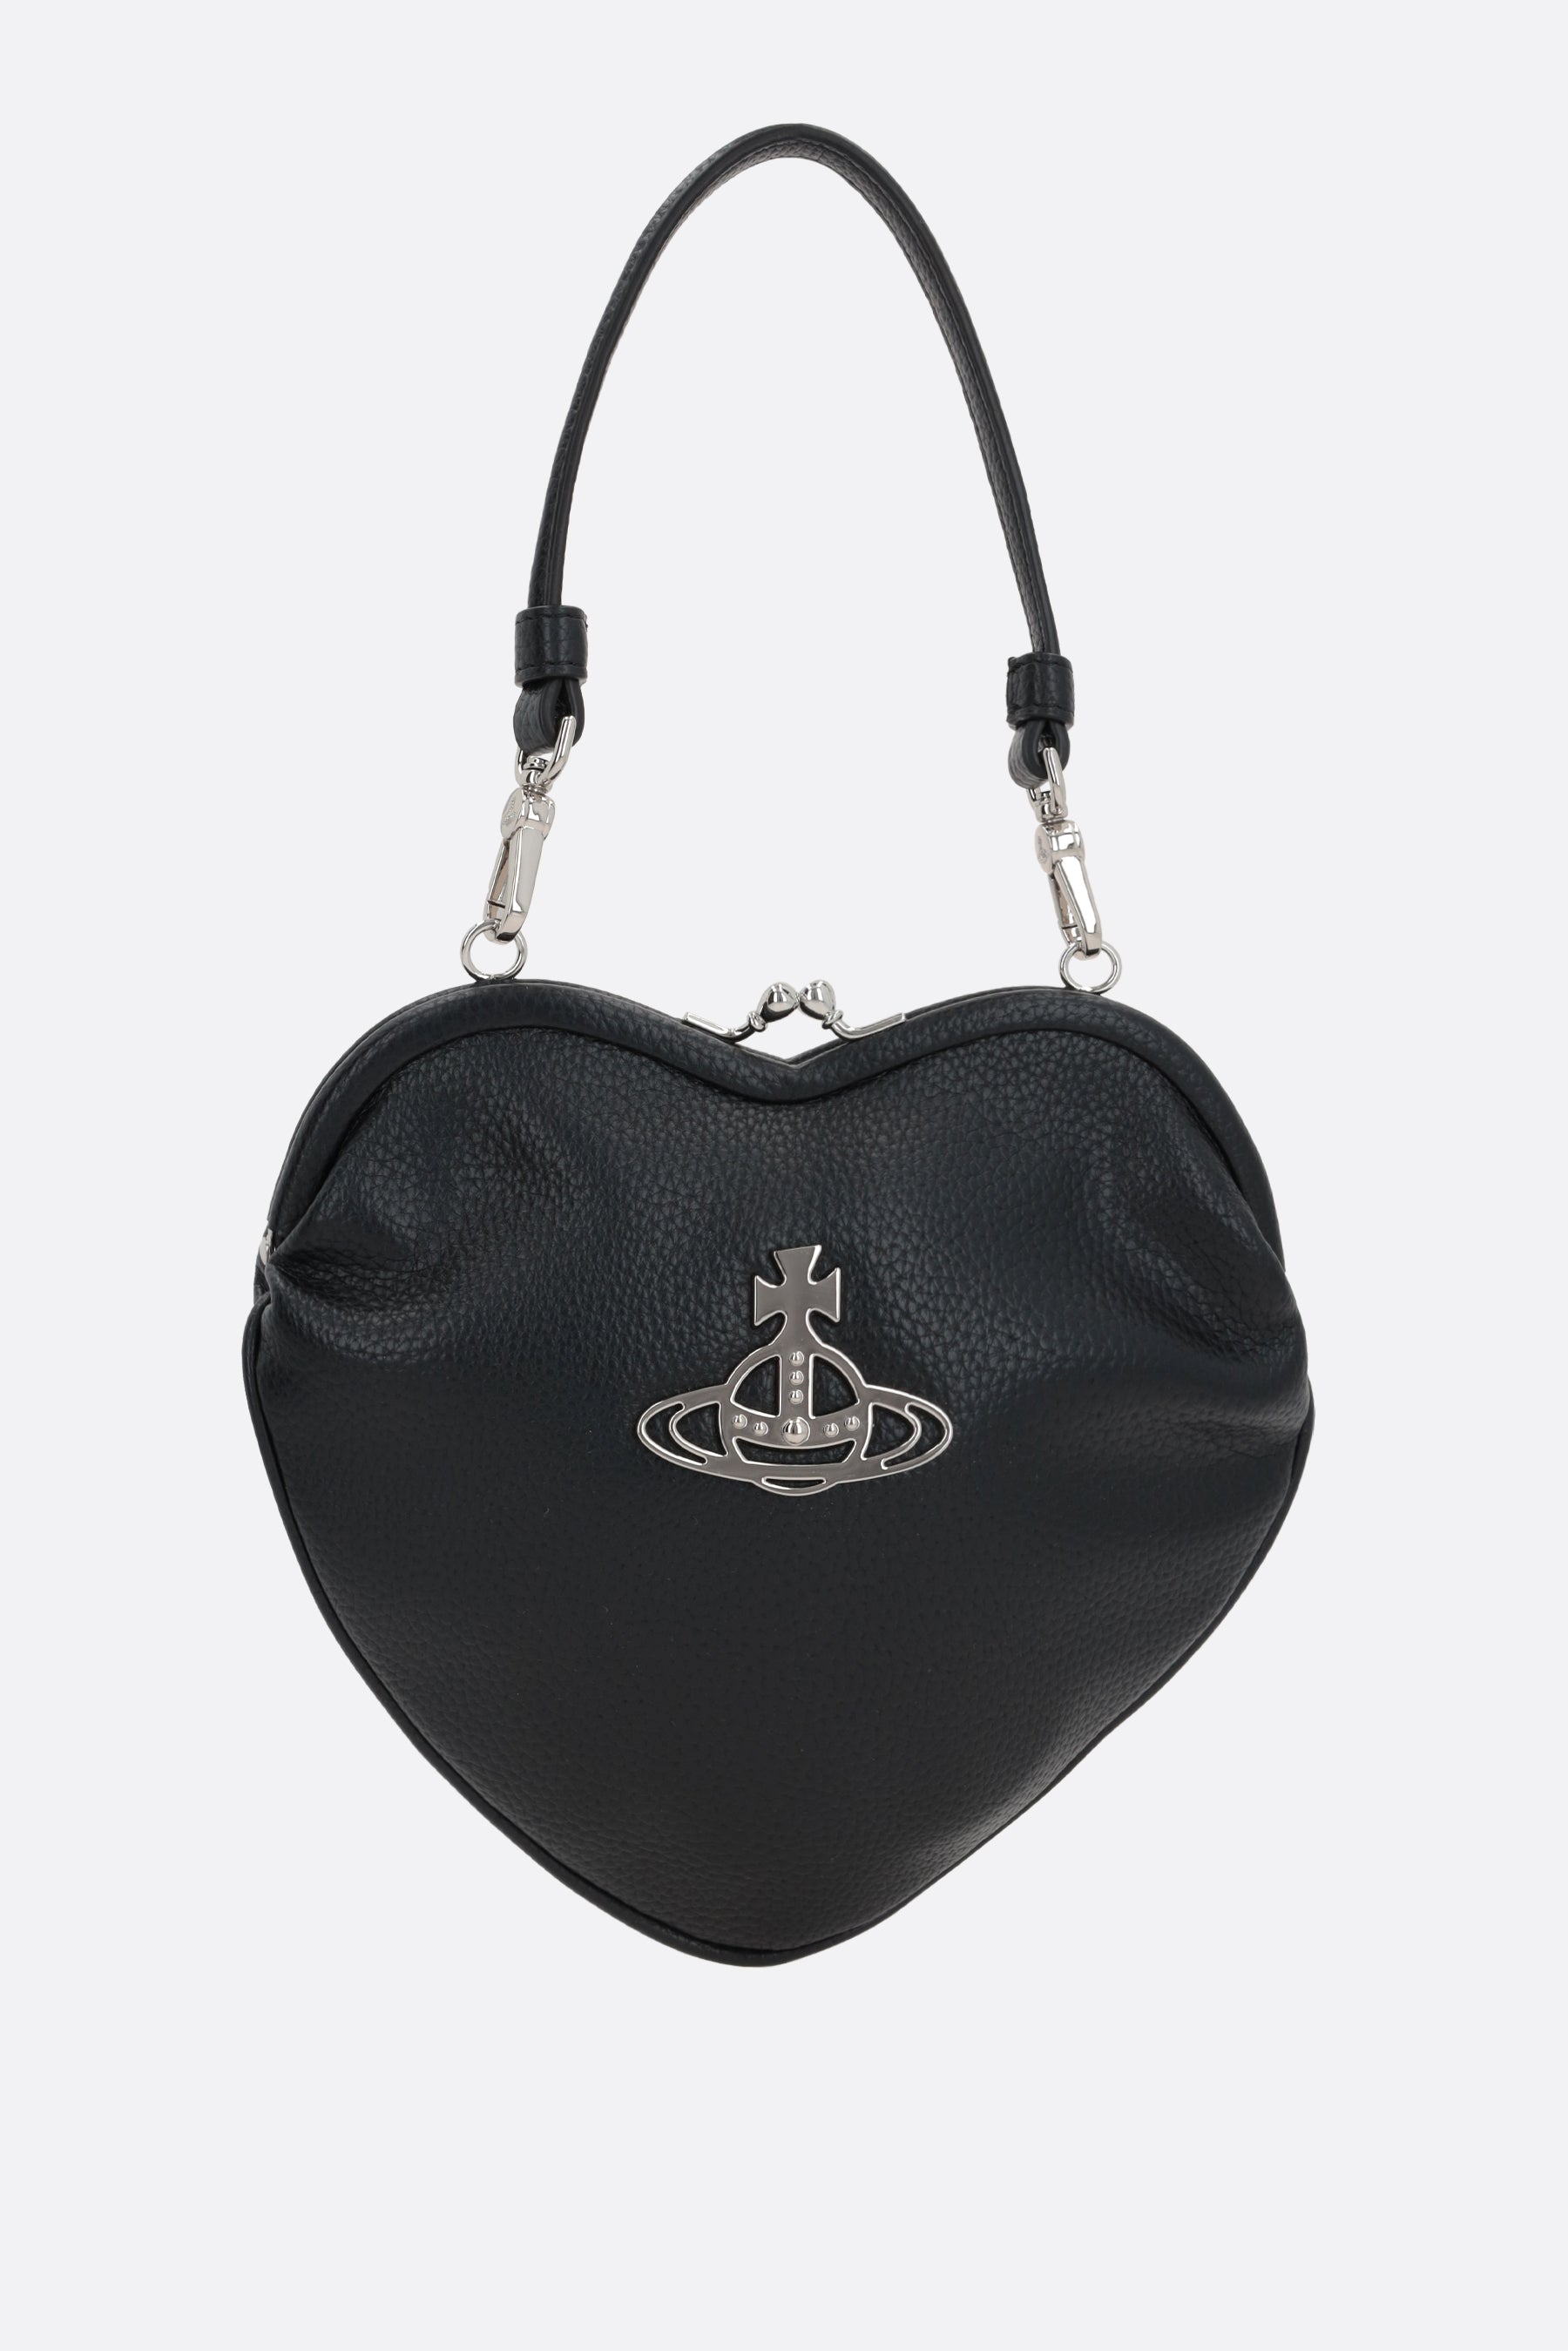 Belle Heart Frame grainy vegan leather handbag